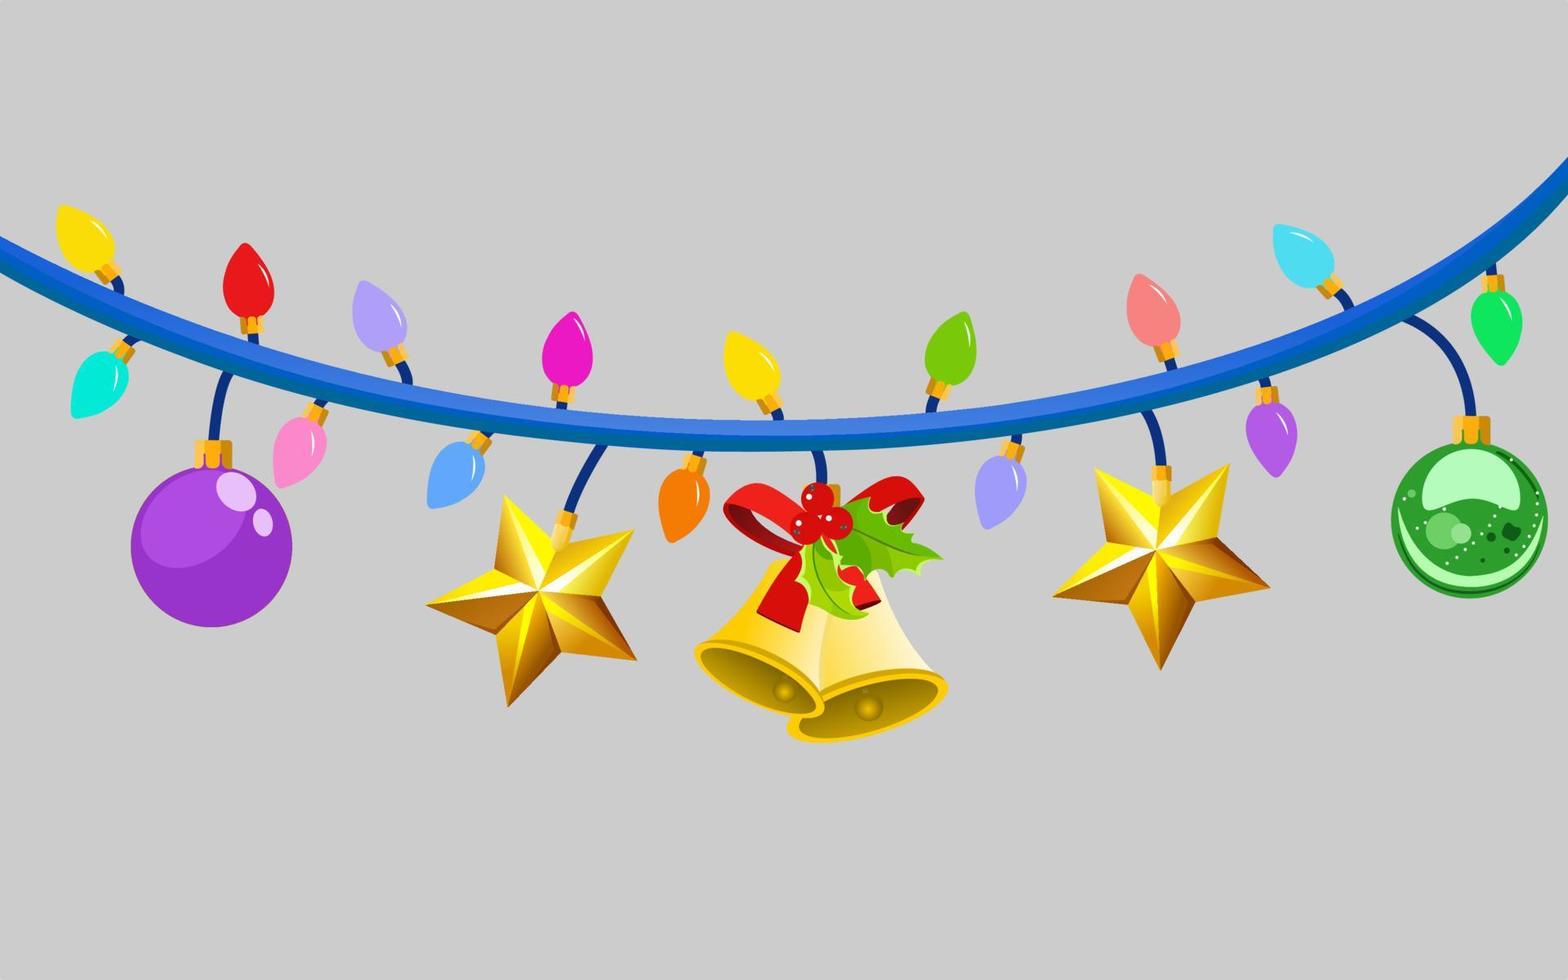 julbelysning och nyår på grå bakgrund med festlig dekoration vektor röd, gul, blå, grön, grannlåt, stjärna och band hoolly bells glödlampor på tråd strängar. festlig vektor mall.